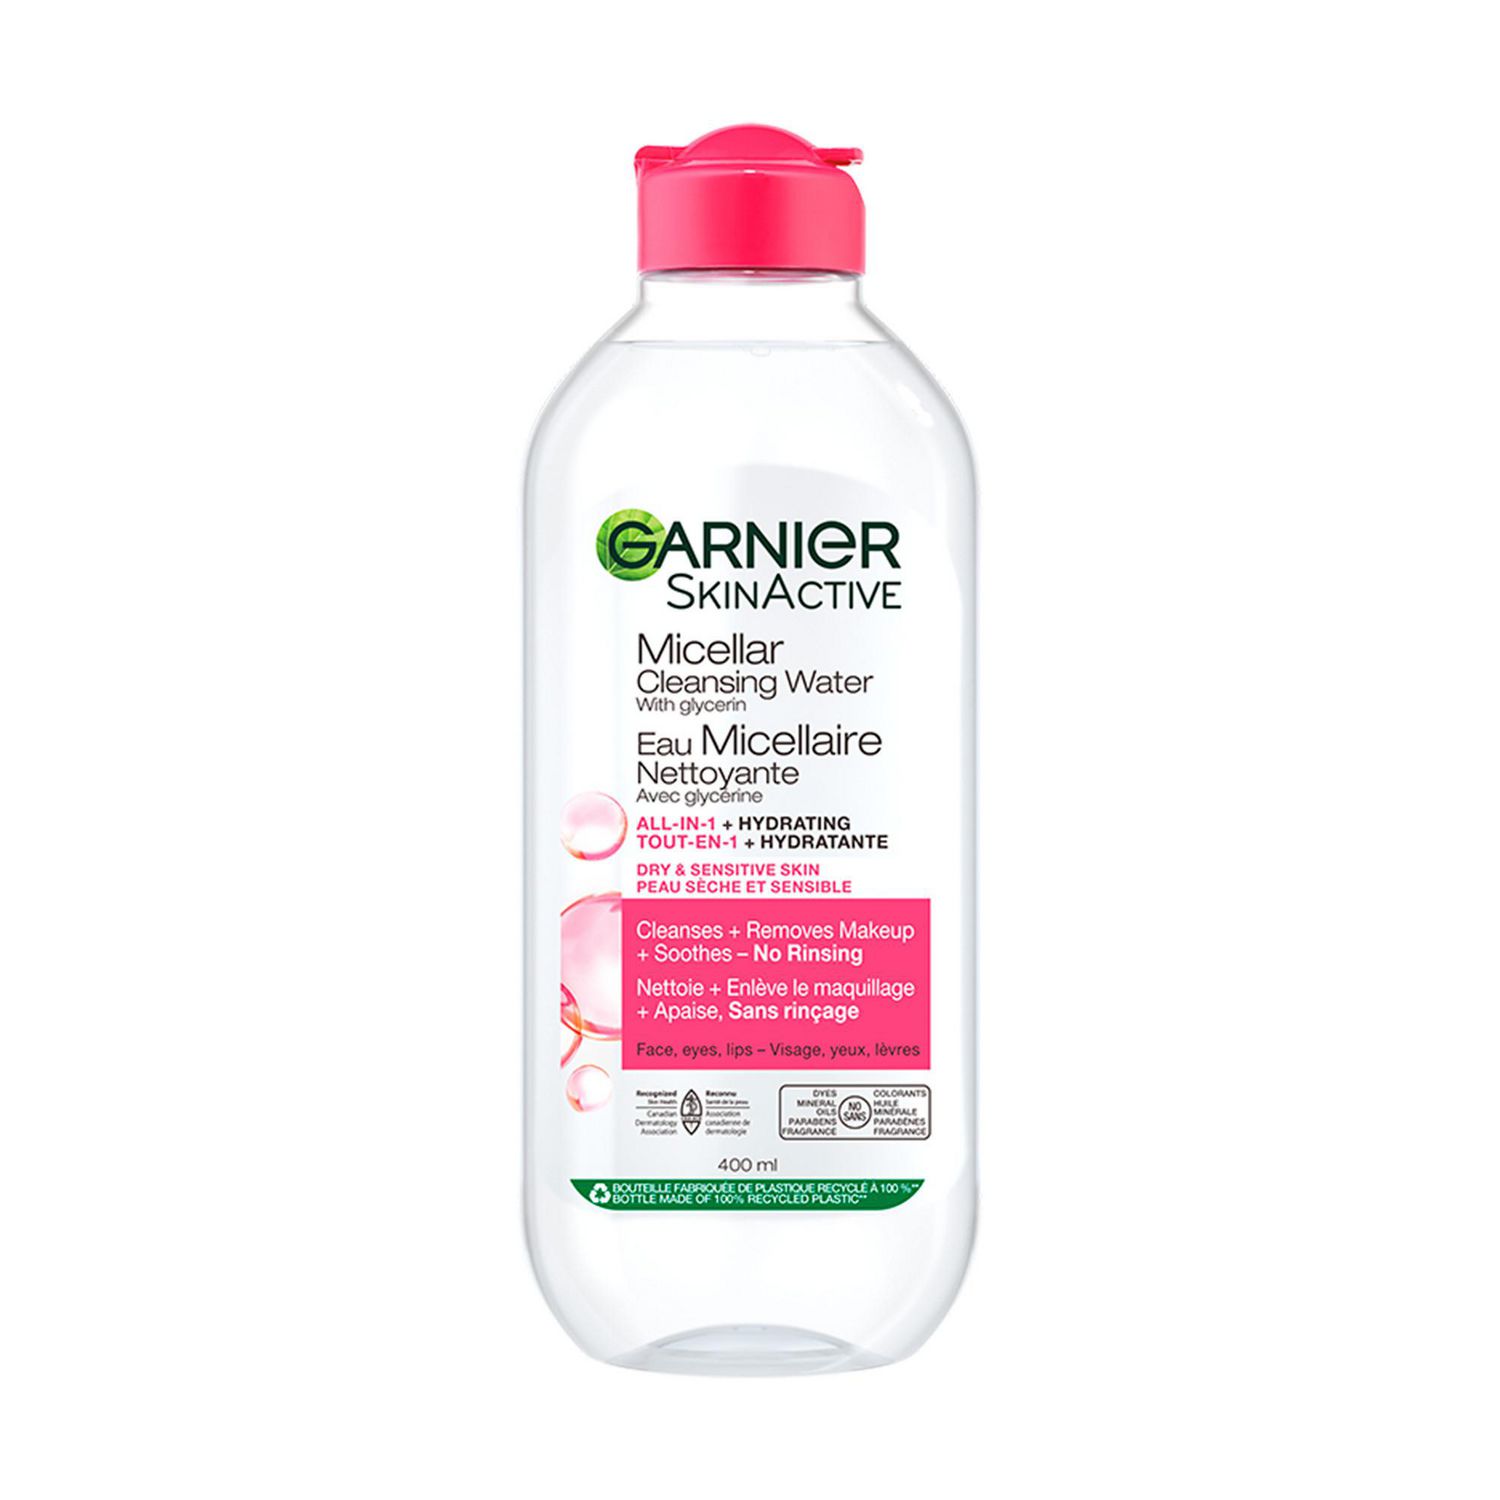 SkinActive eau nettoyante micellaire, peau sensible – Garnier : Nettoyant